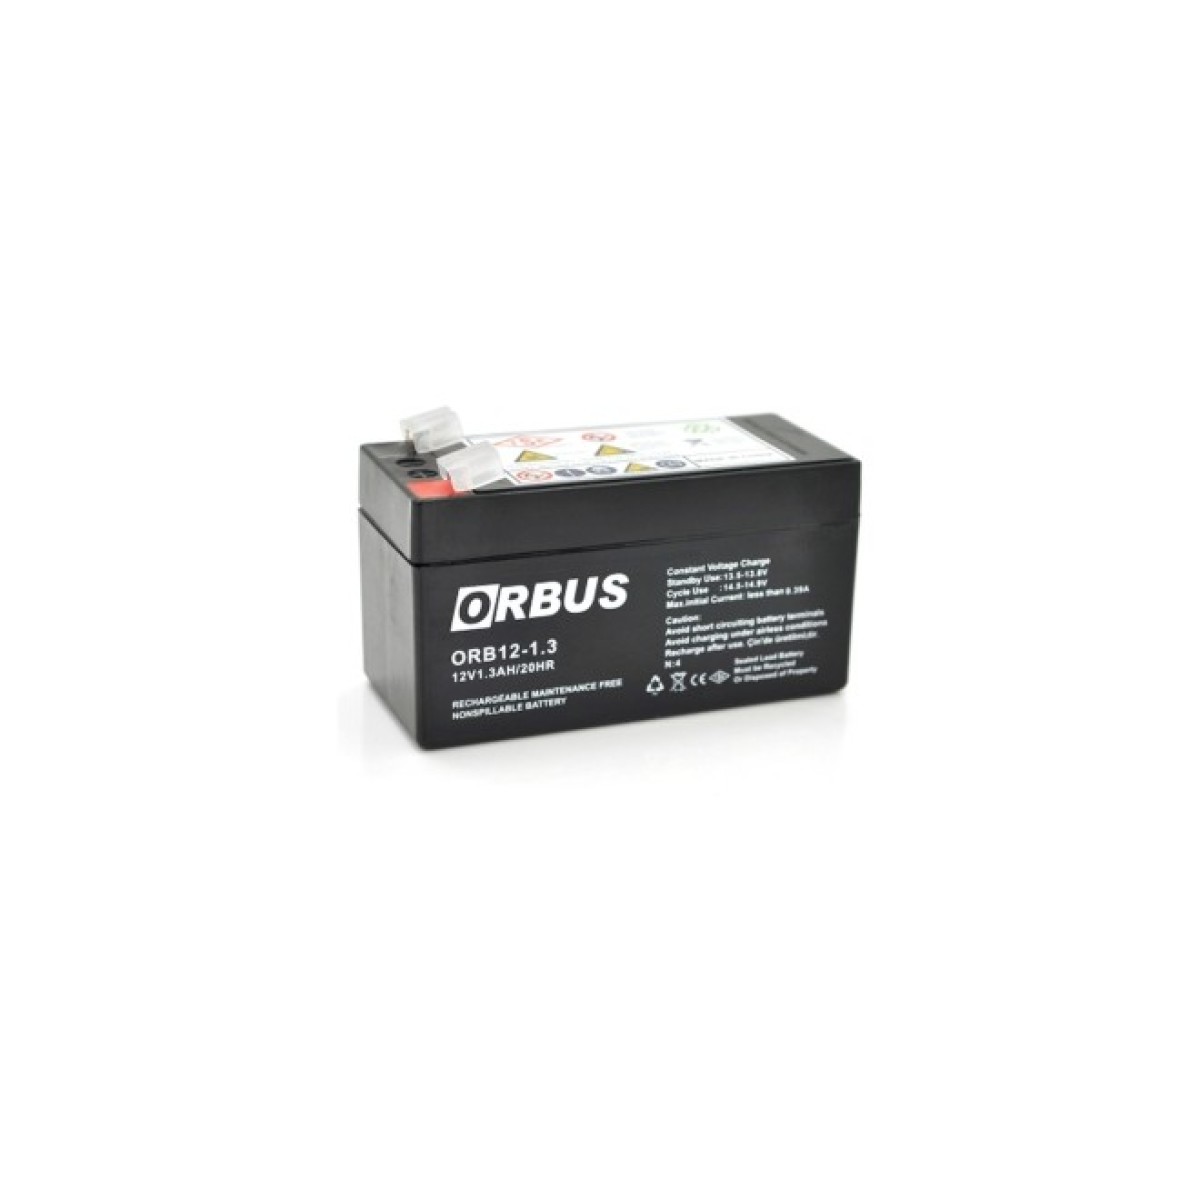 Батарея к ИБП Orbus ORB1213 AGM 12V 1.3Ah (ORB1213) 256_256.jpg